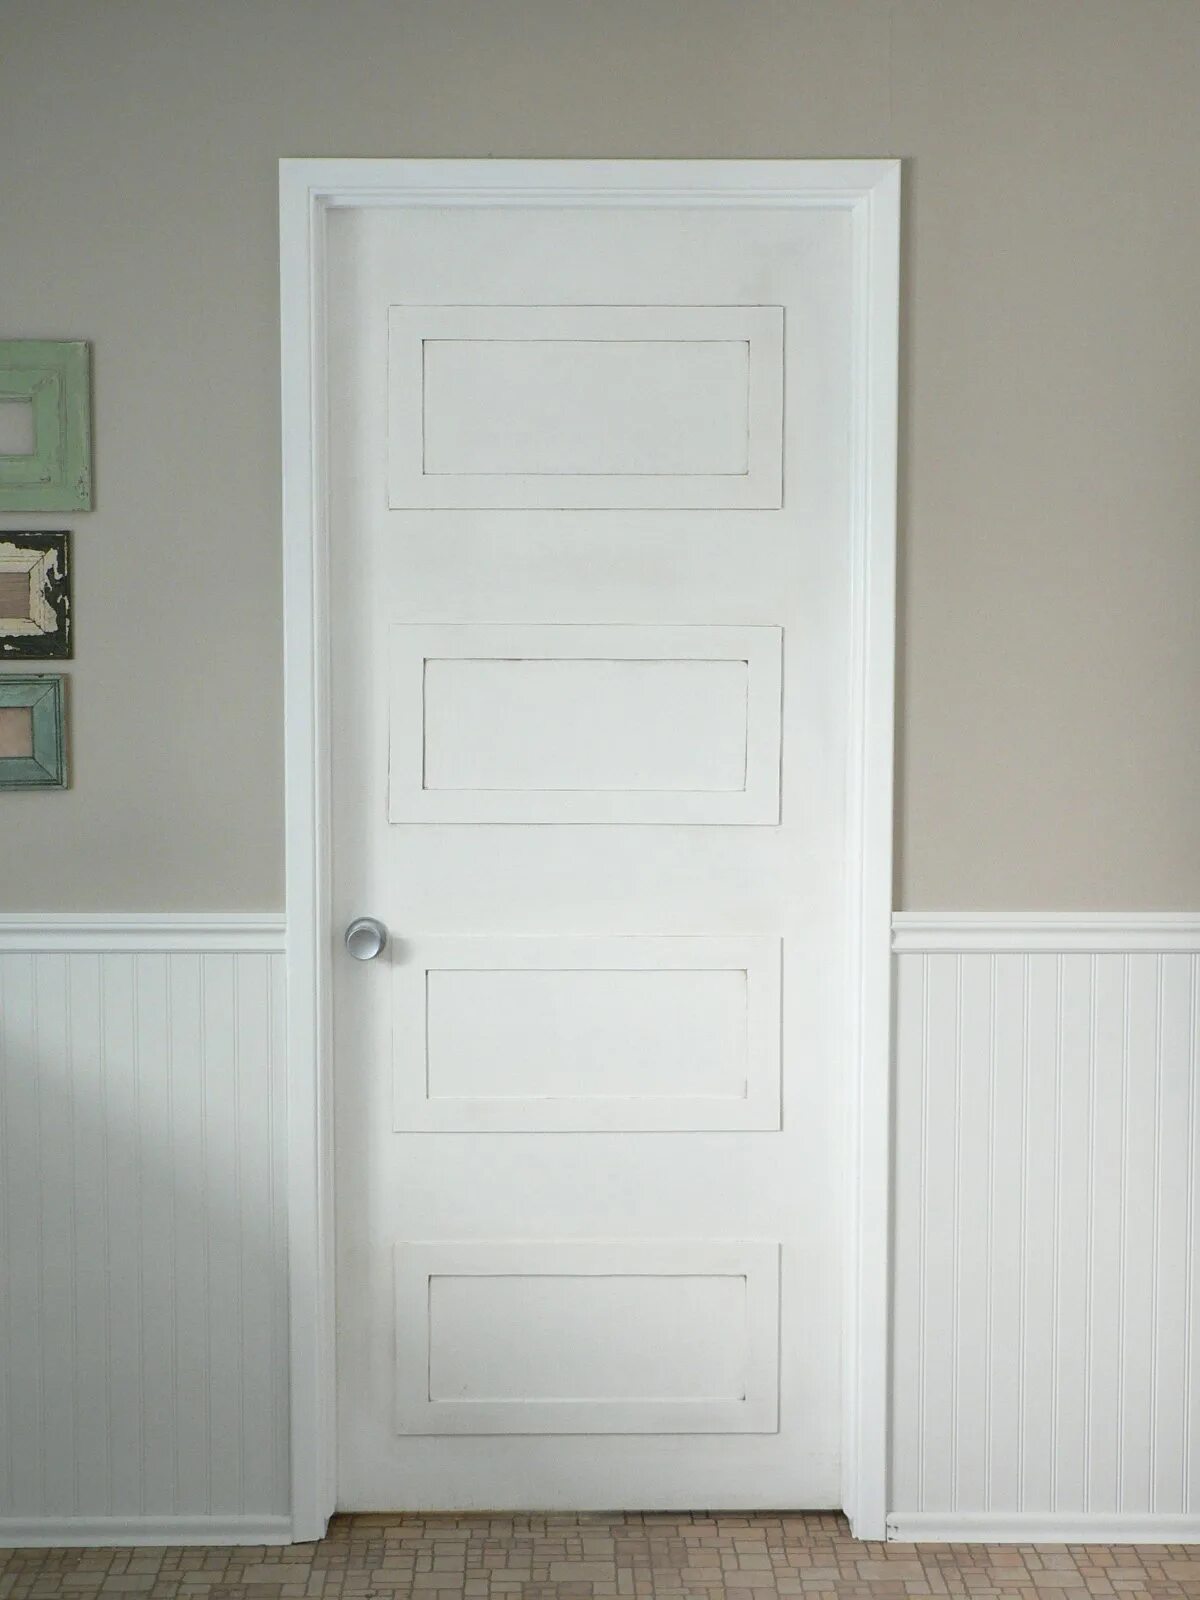 Flat door. Молдинг на двери межкомнатные. Декорирование двери молдингом. Белая дверь с молдингом. Декор старой белой двери.